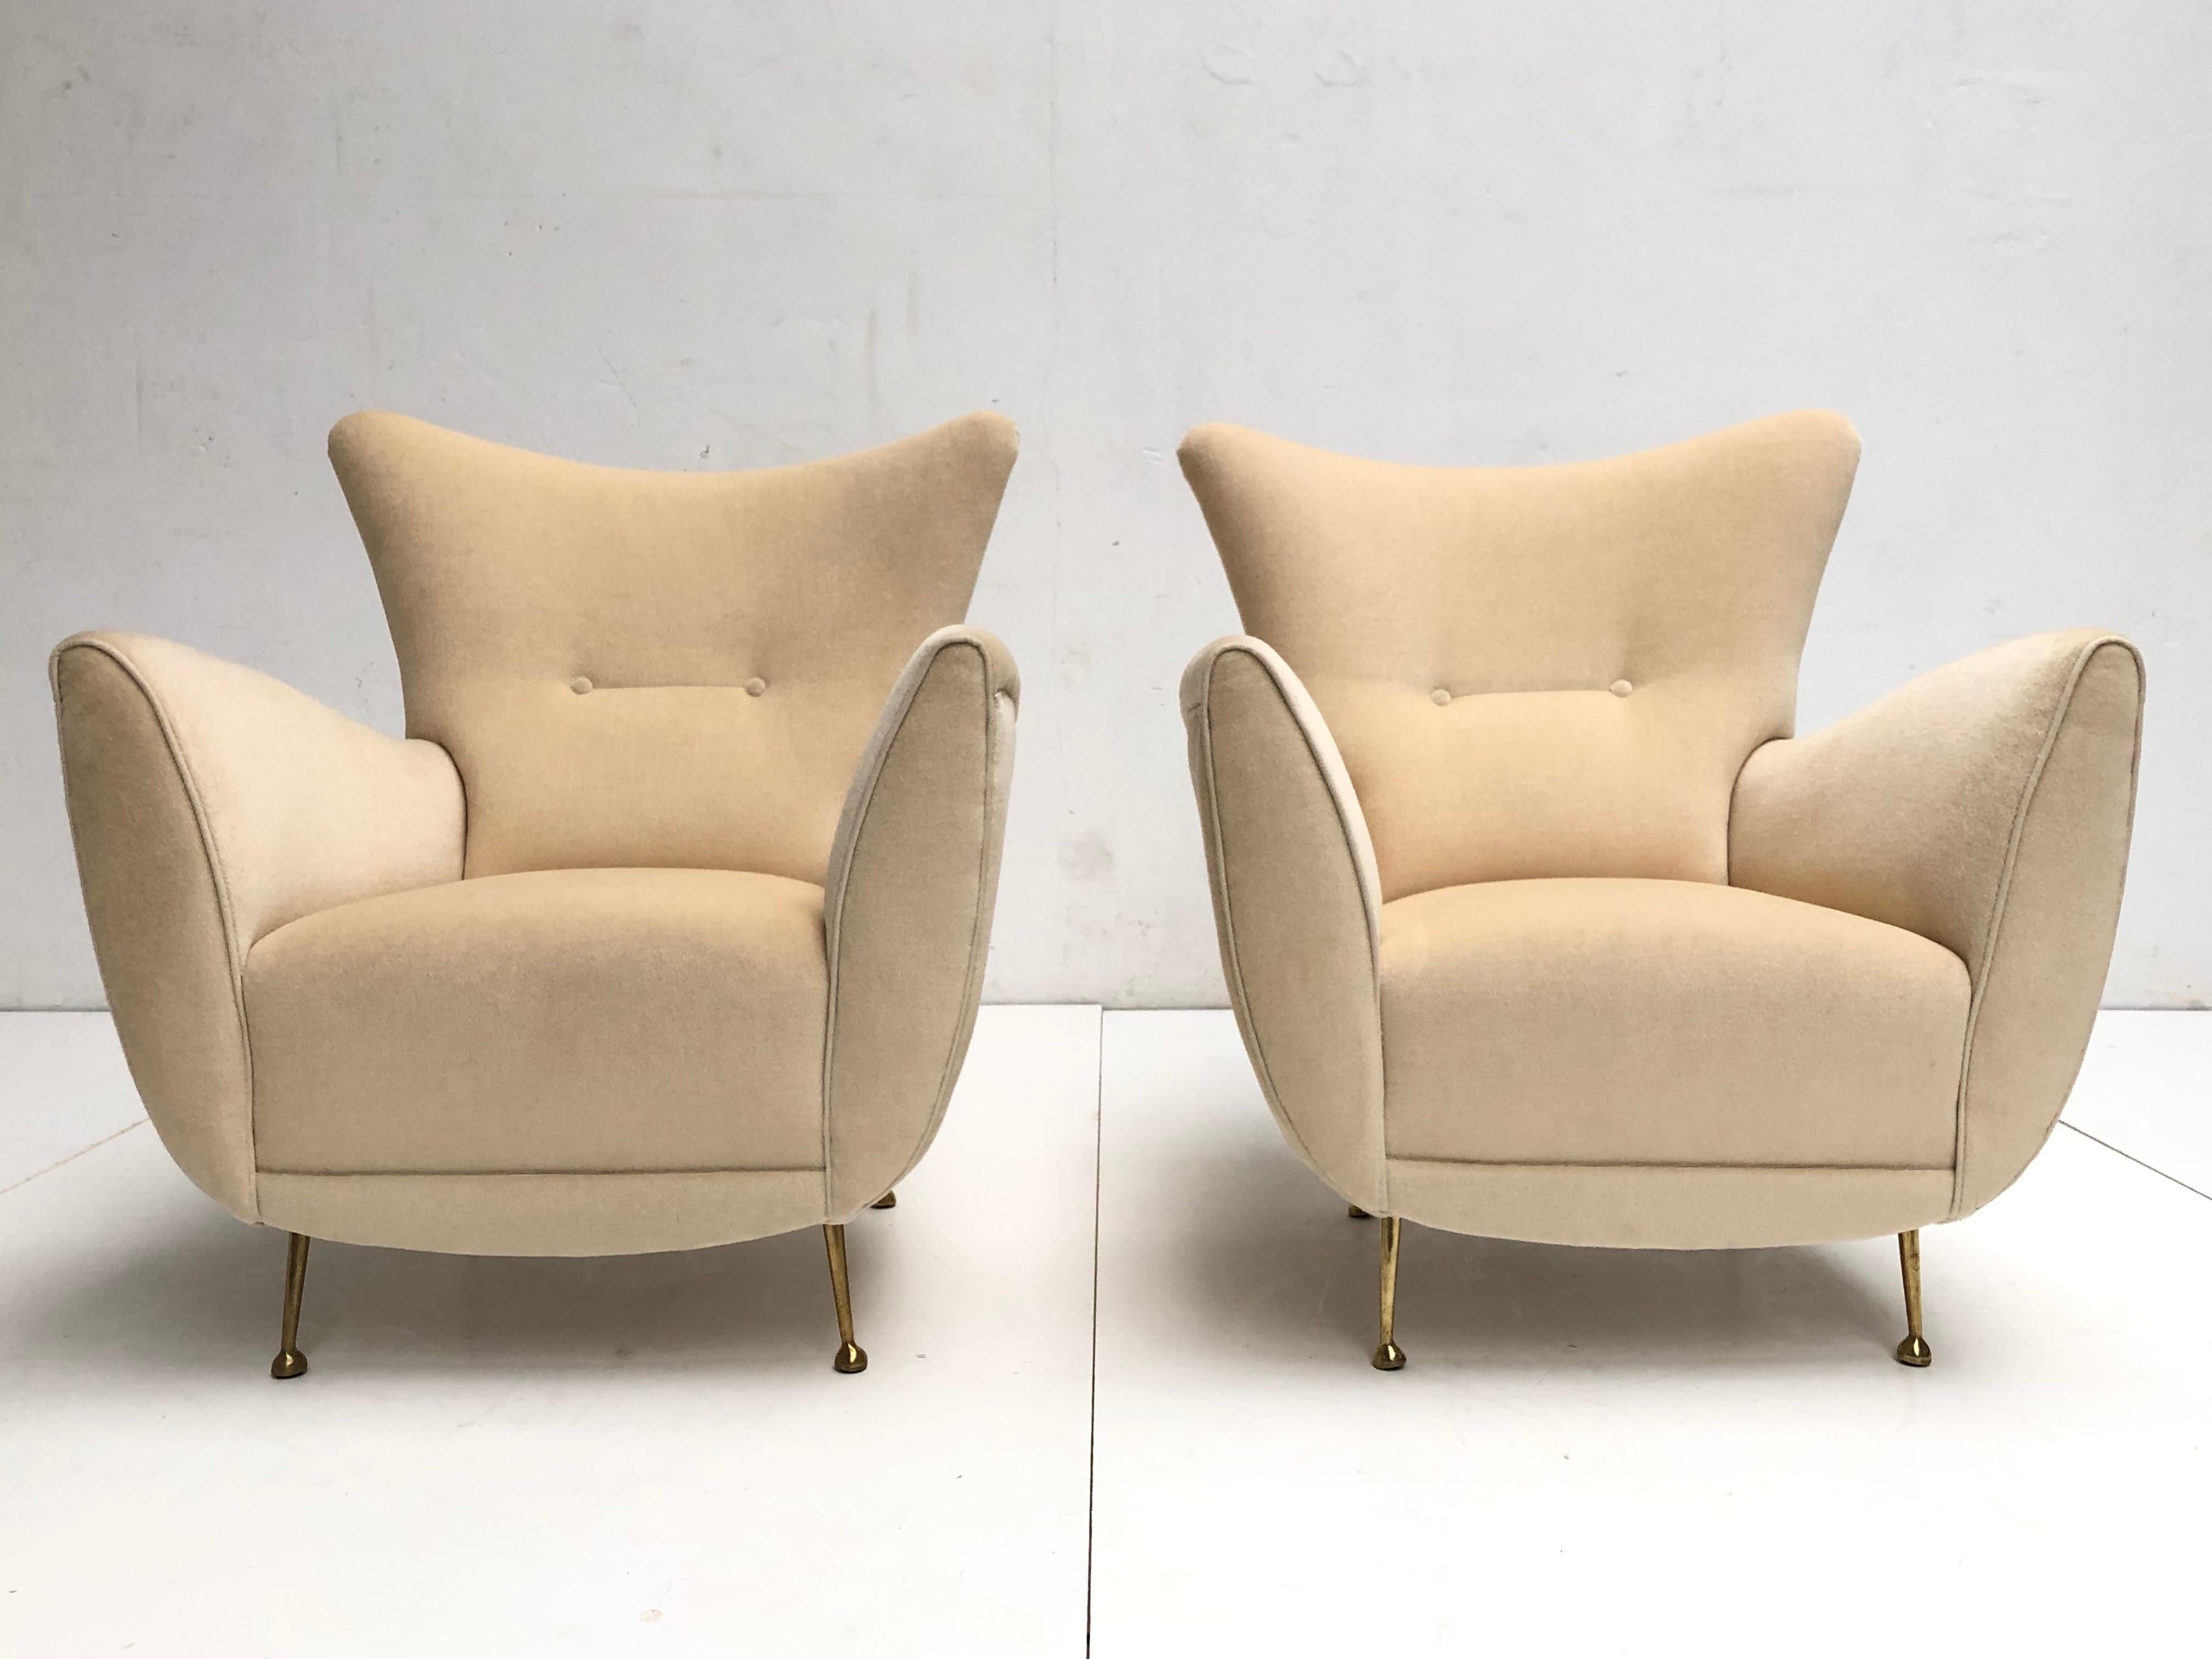 Schönes Paar restaurierte skulpturale Form italienische Lounge-Stühle im Stil von Gio Ponti aus den sehr frühen 1950er Jahren mit wunderschön handgefertigten Holzrahmen und gefederten Sitzen, die Stühle sind in Mohair-Stoff mit biomorphen Form